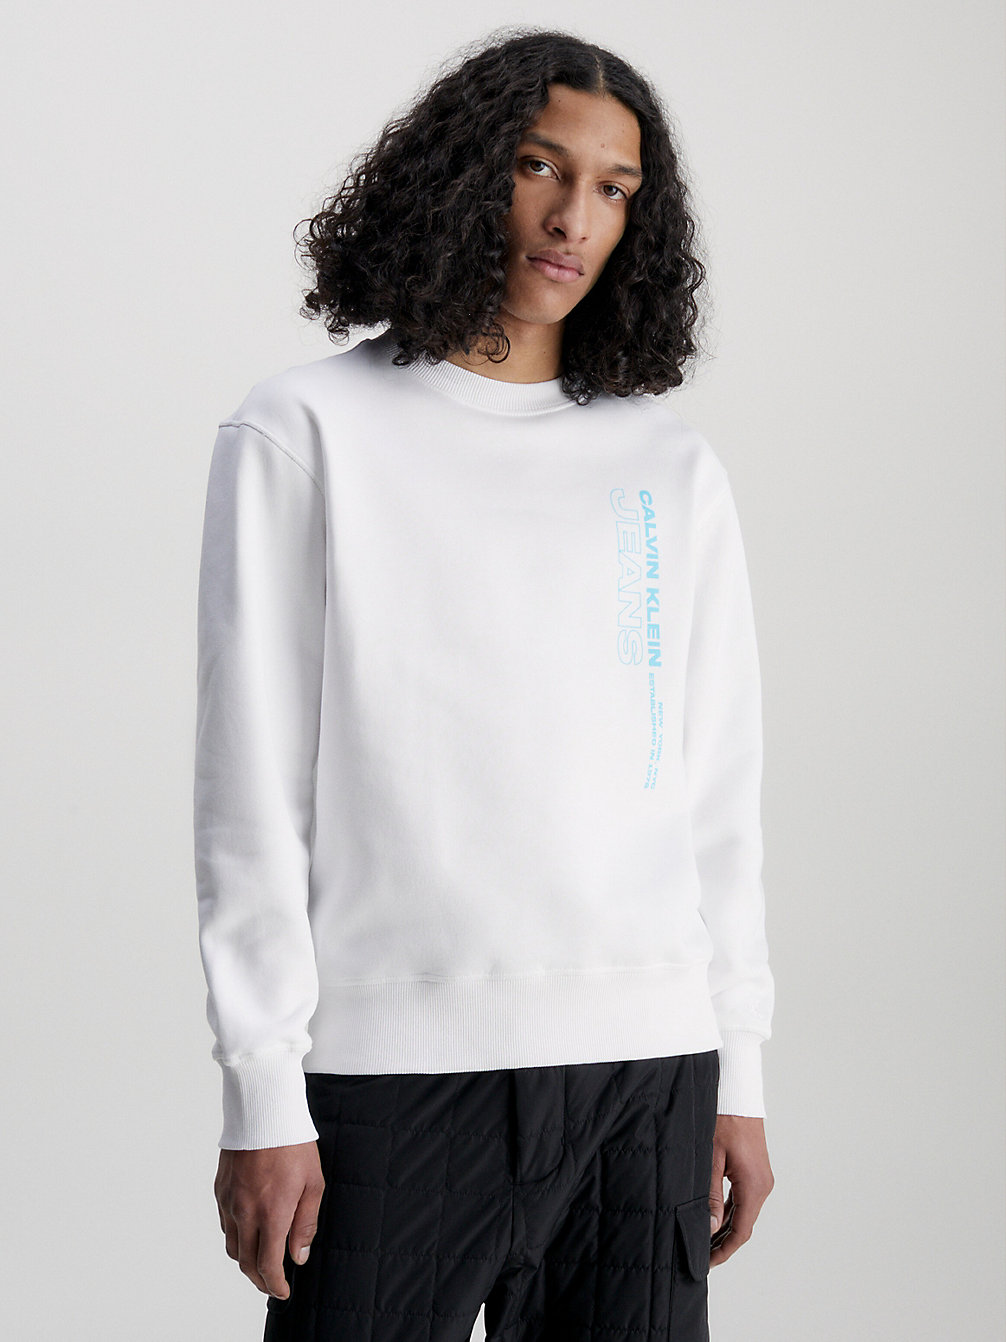 BRIGHT WHITE > Bluza Z Logo Z Polaru I Bawełny > undefined Mężczyźni - Calvin Klein